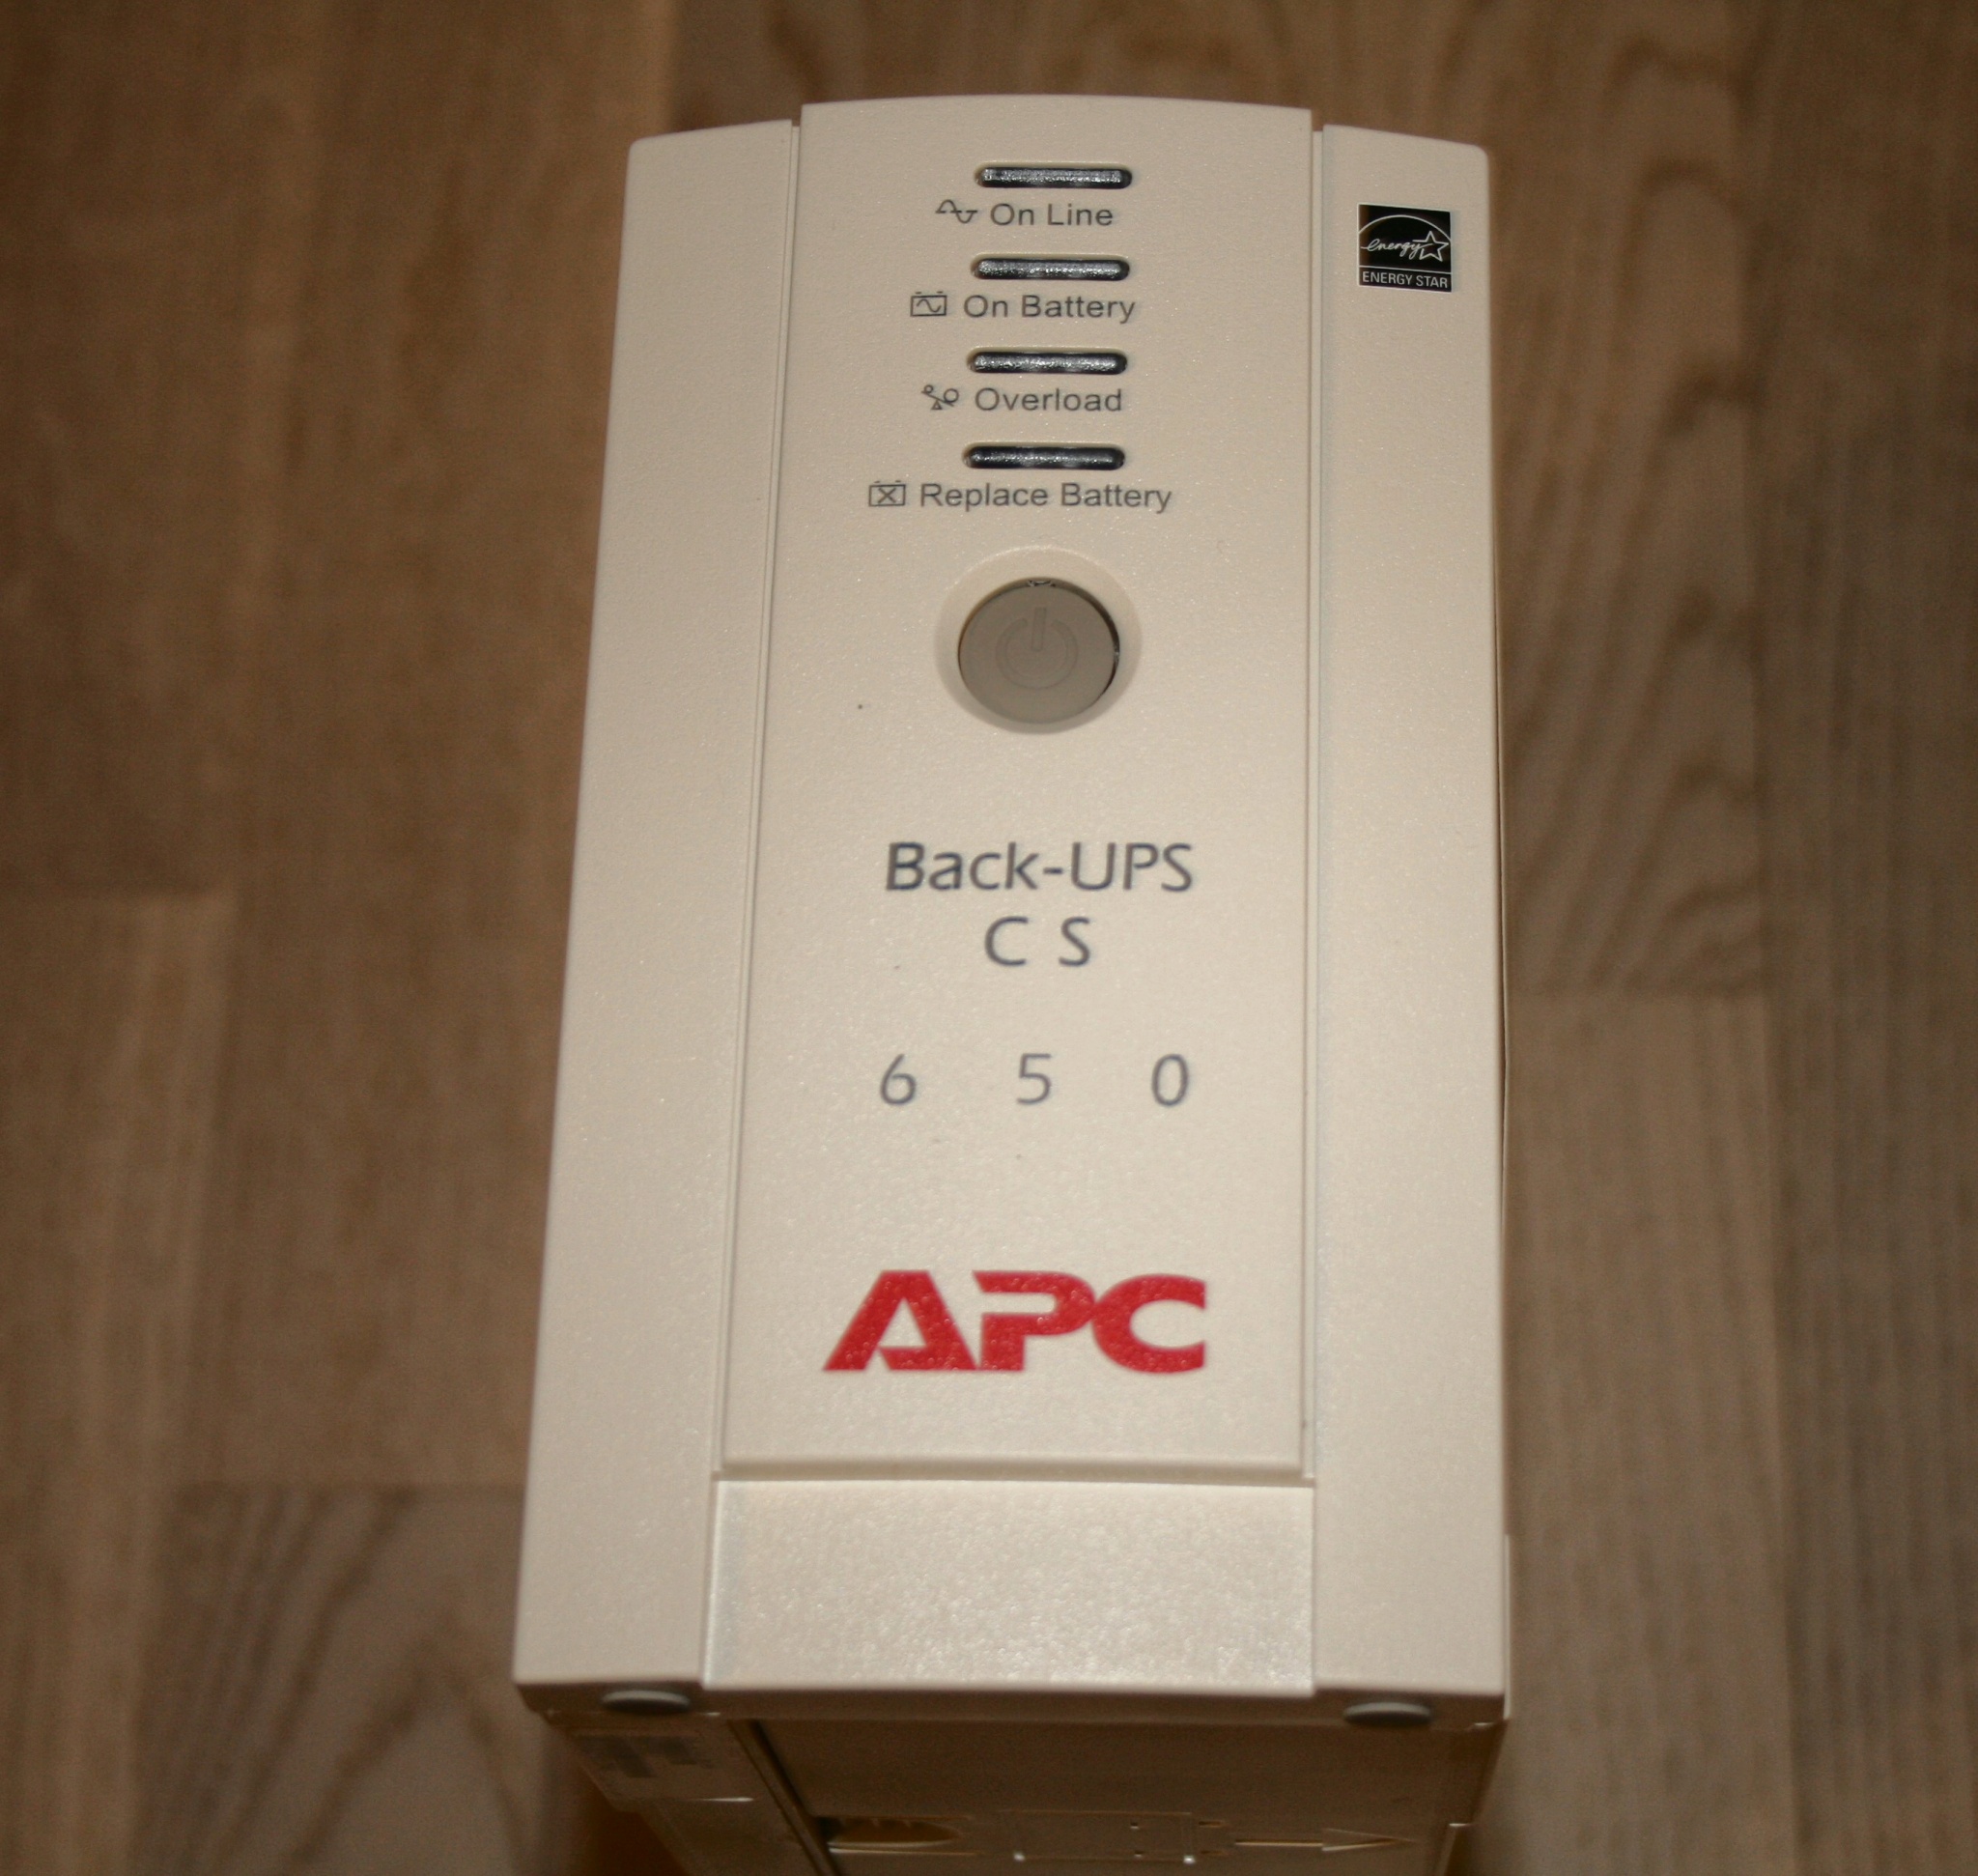 Apc cs 650. APC back-ups CS 650. Back ups bk650ei. Back ups CS 650. Back-ups CS 650va.